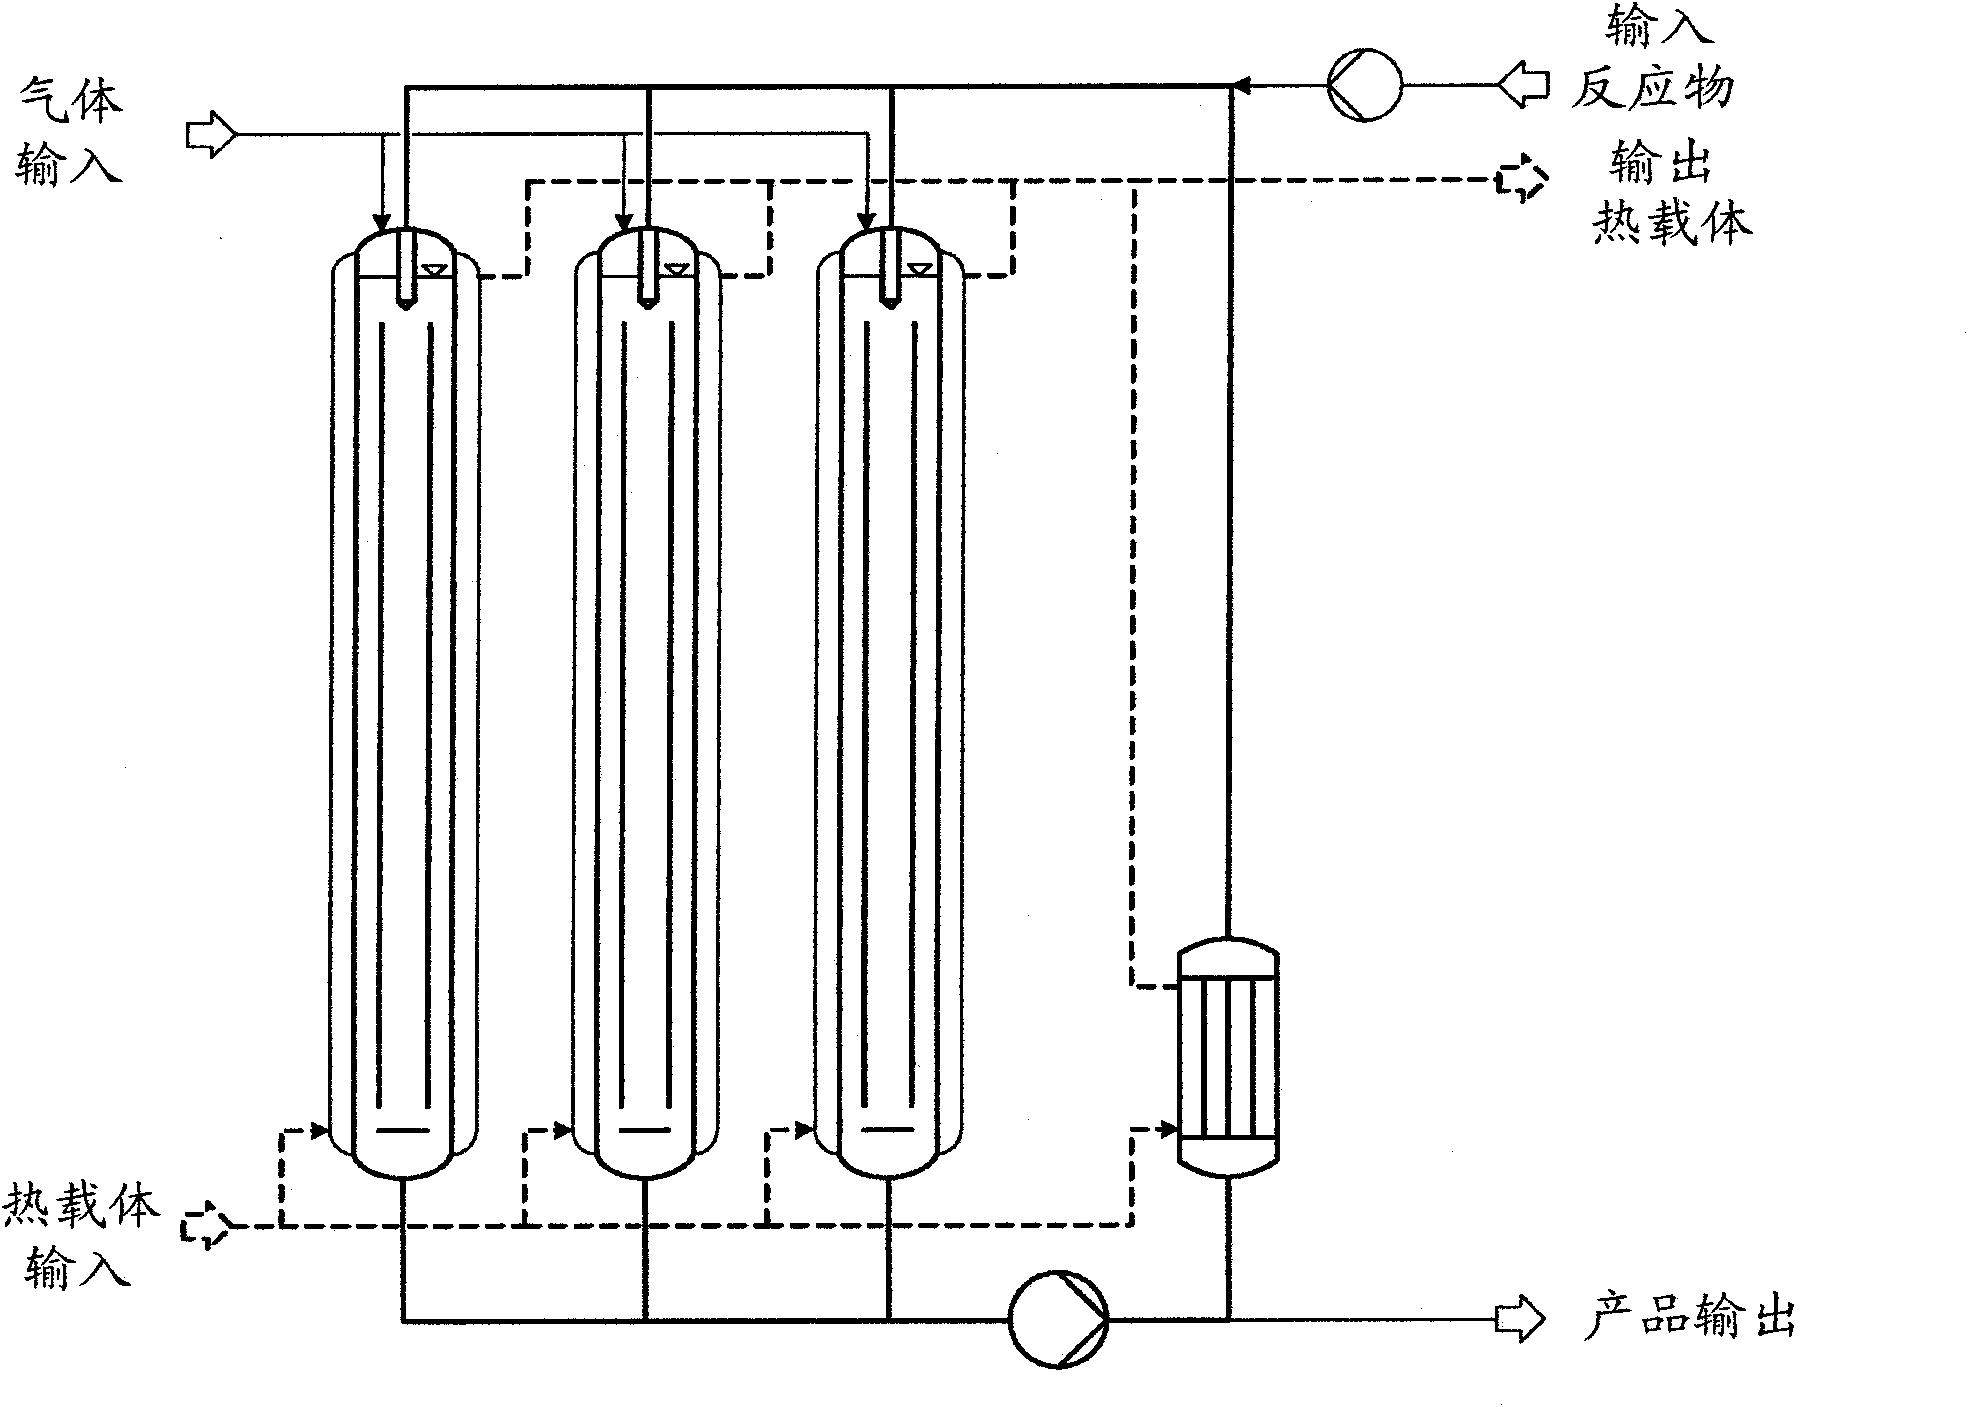 Parallelized jet loop reactors